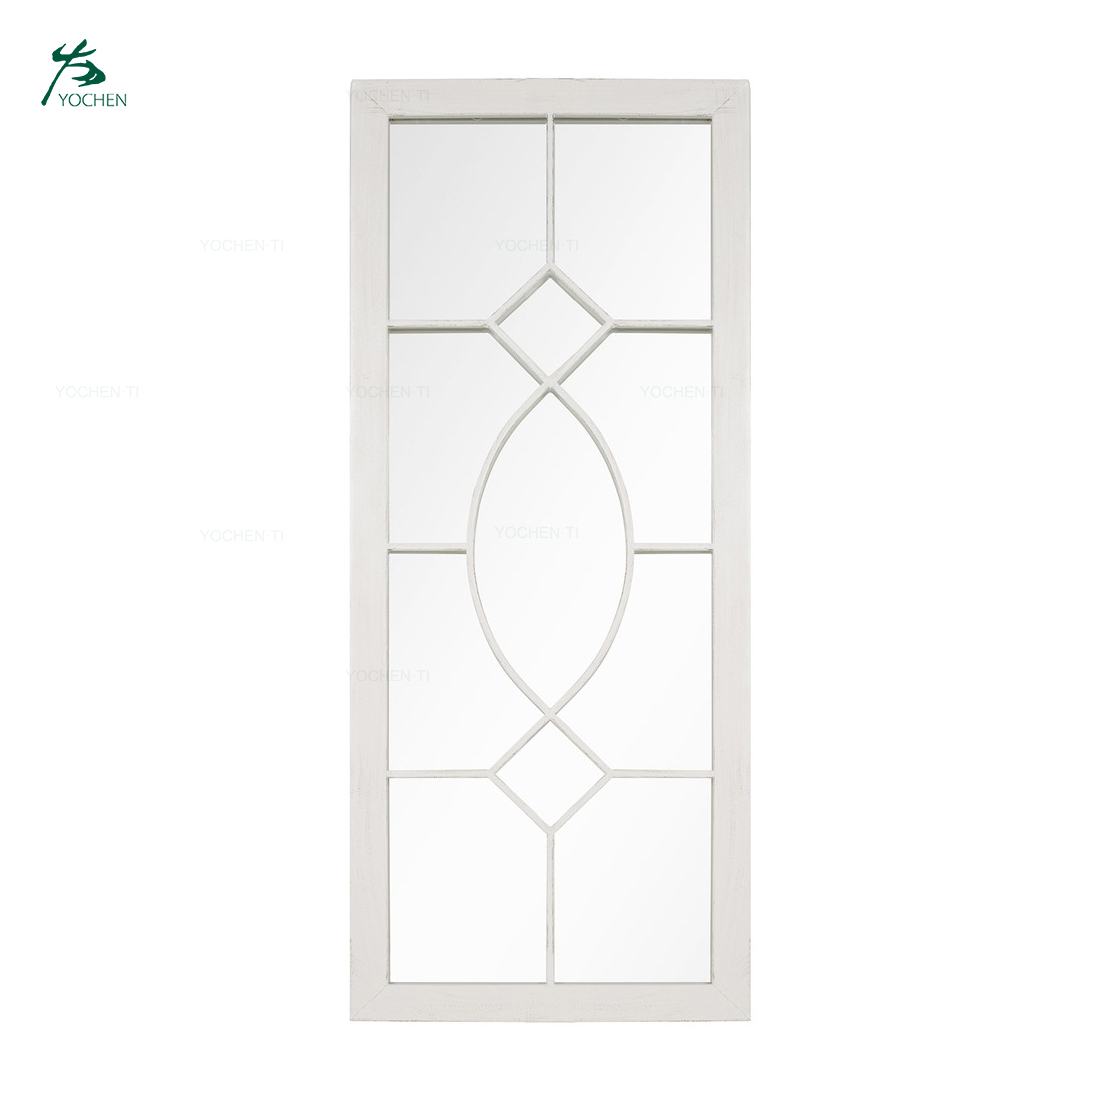 European Style Tall Rectangular Wall Mirror For Garden Or Outdoor Decorative